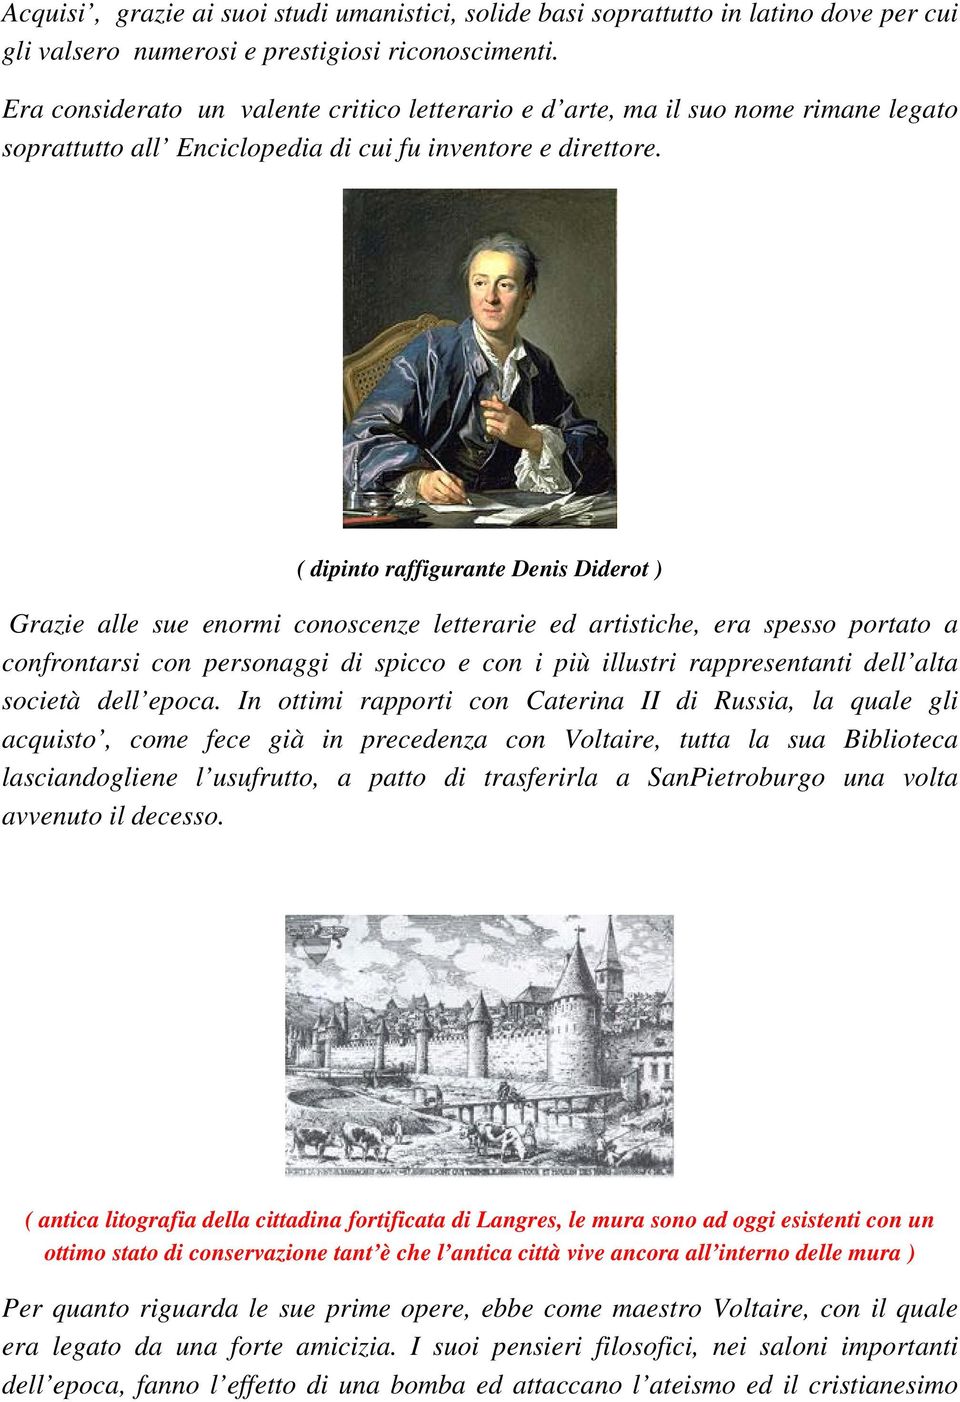 ( dipinto raffigurante Denis Diderot ) Grazie alle sue enormi conoscenze letterarie ed artistiche, era spesso portato a confrontarsi con personaggi di spicco e con i più illustri rappresentanti dell